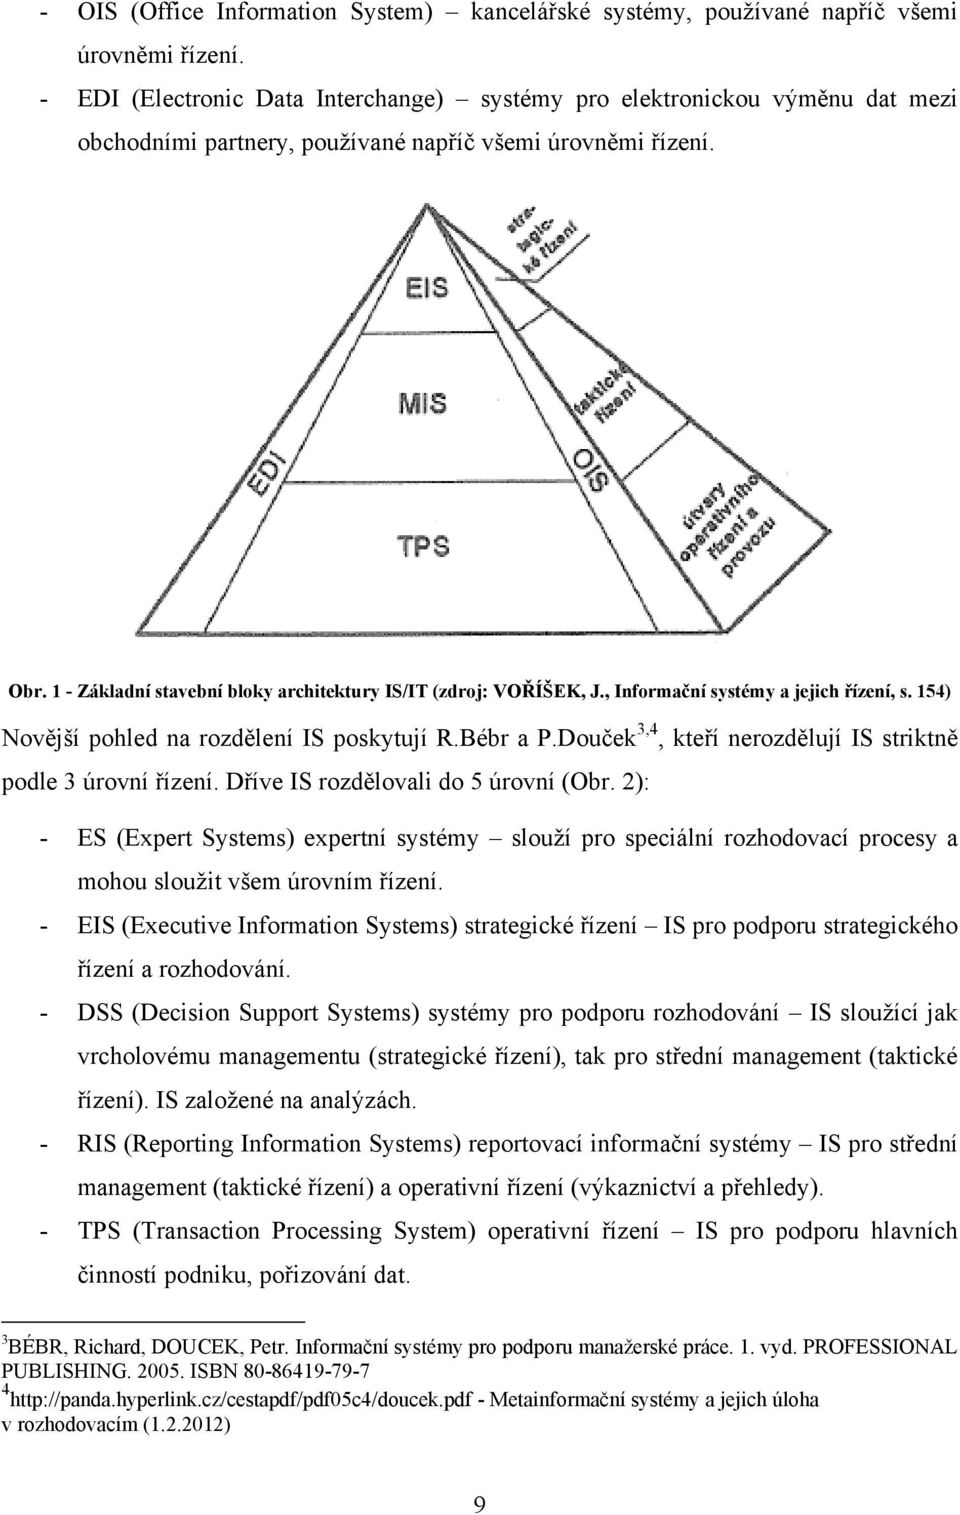 1 - Základní stavební bloky architektury IS/IT (zdroj: VOŘÍŠEK, J., Informační systémy a jejich řízení, s. 154) Novější pohled na rozdělení IS poskytují R.Bébr a P.